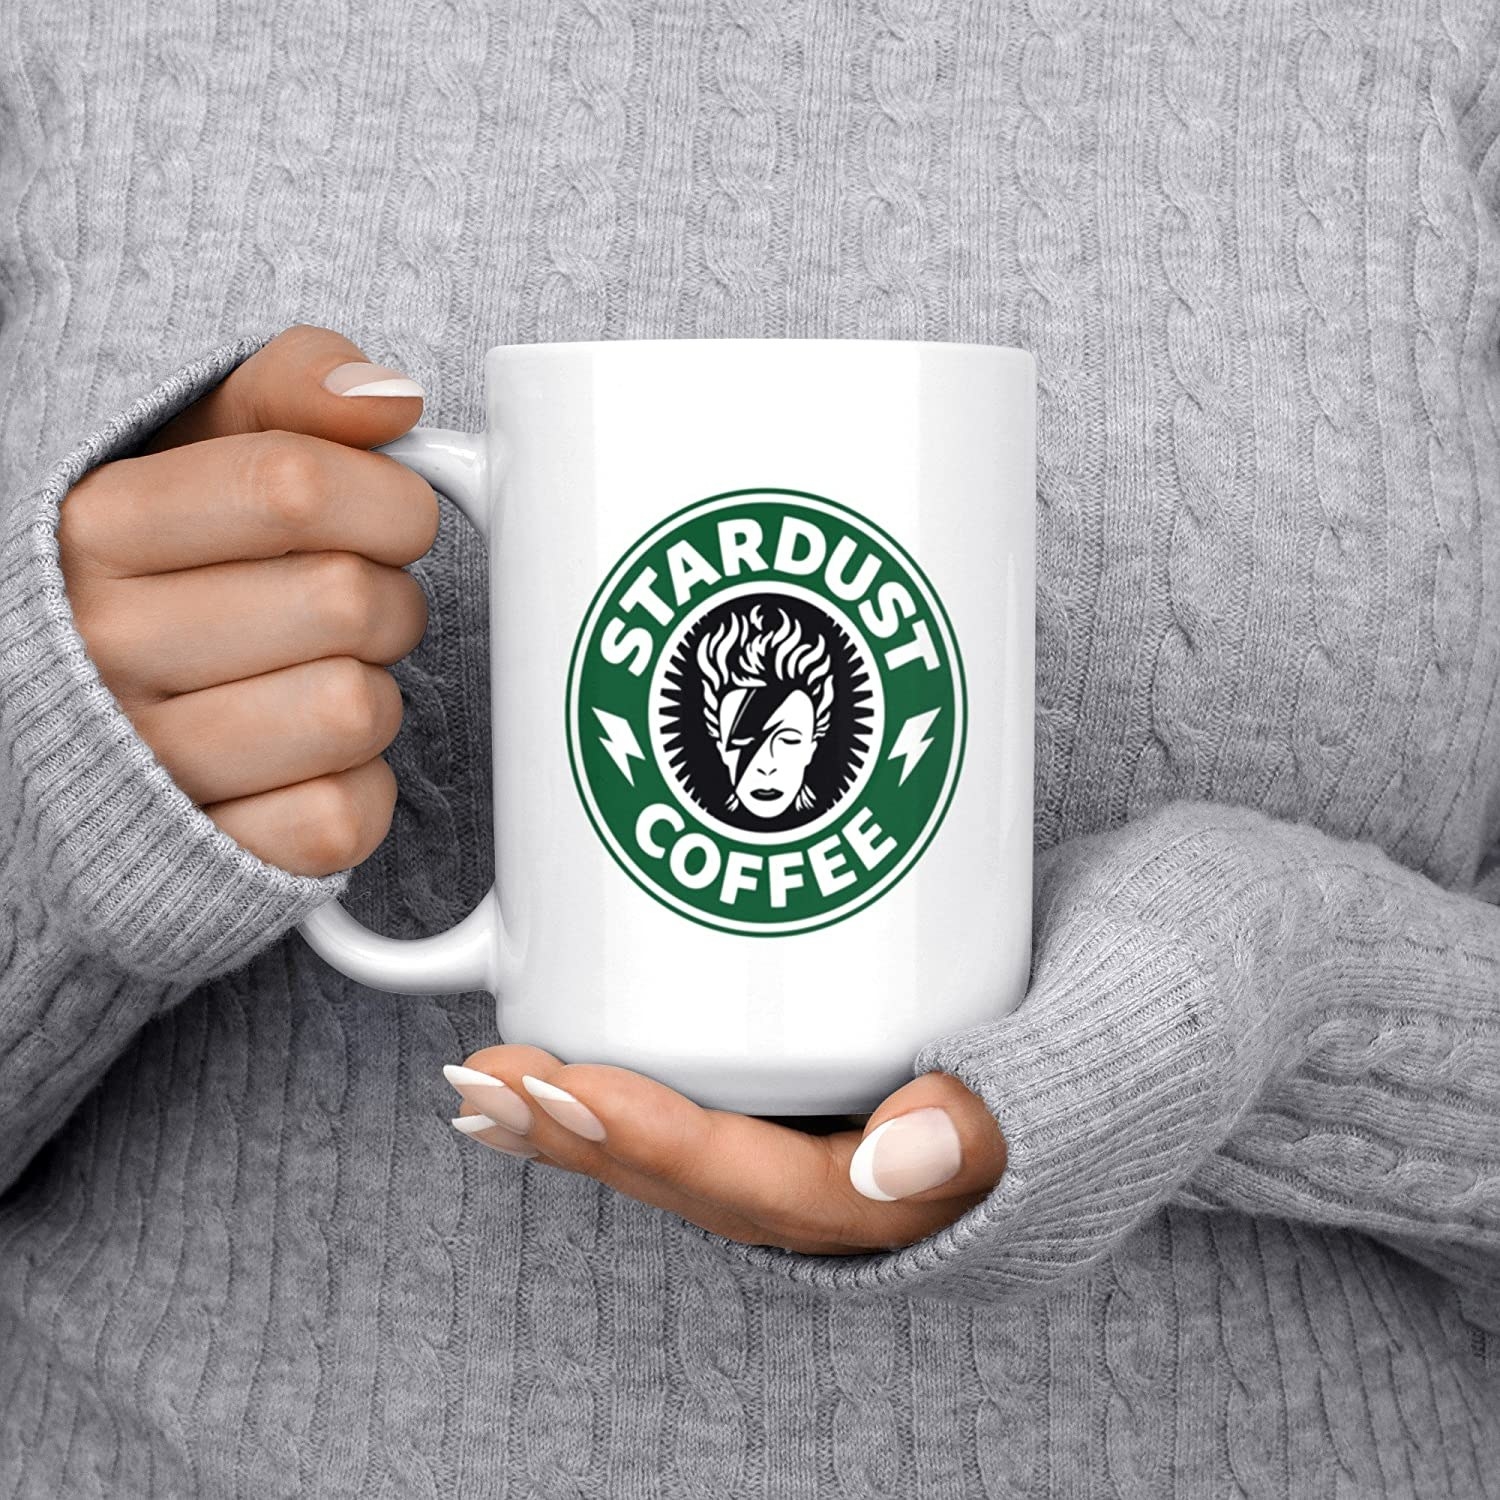 taza blanco con imagen de David Bowie imitando el logo de Starbucks